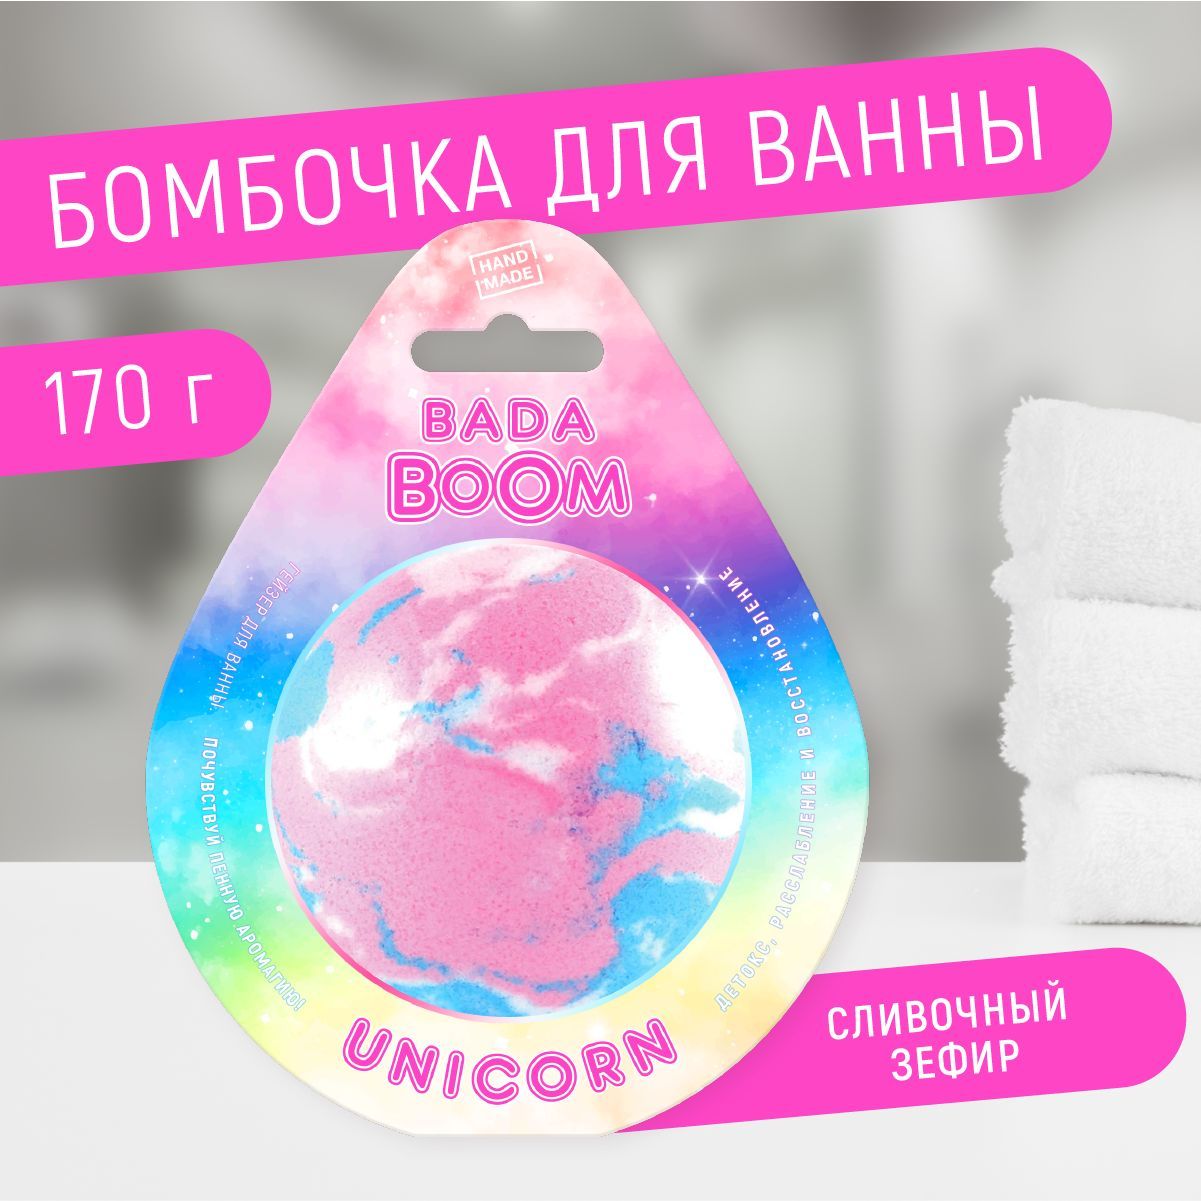 Бомбочка для ванны эко гейзер Unicorn сливочный зефир 170 г чехол для карточек unicorn ballerina розовый градиент